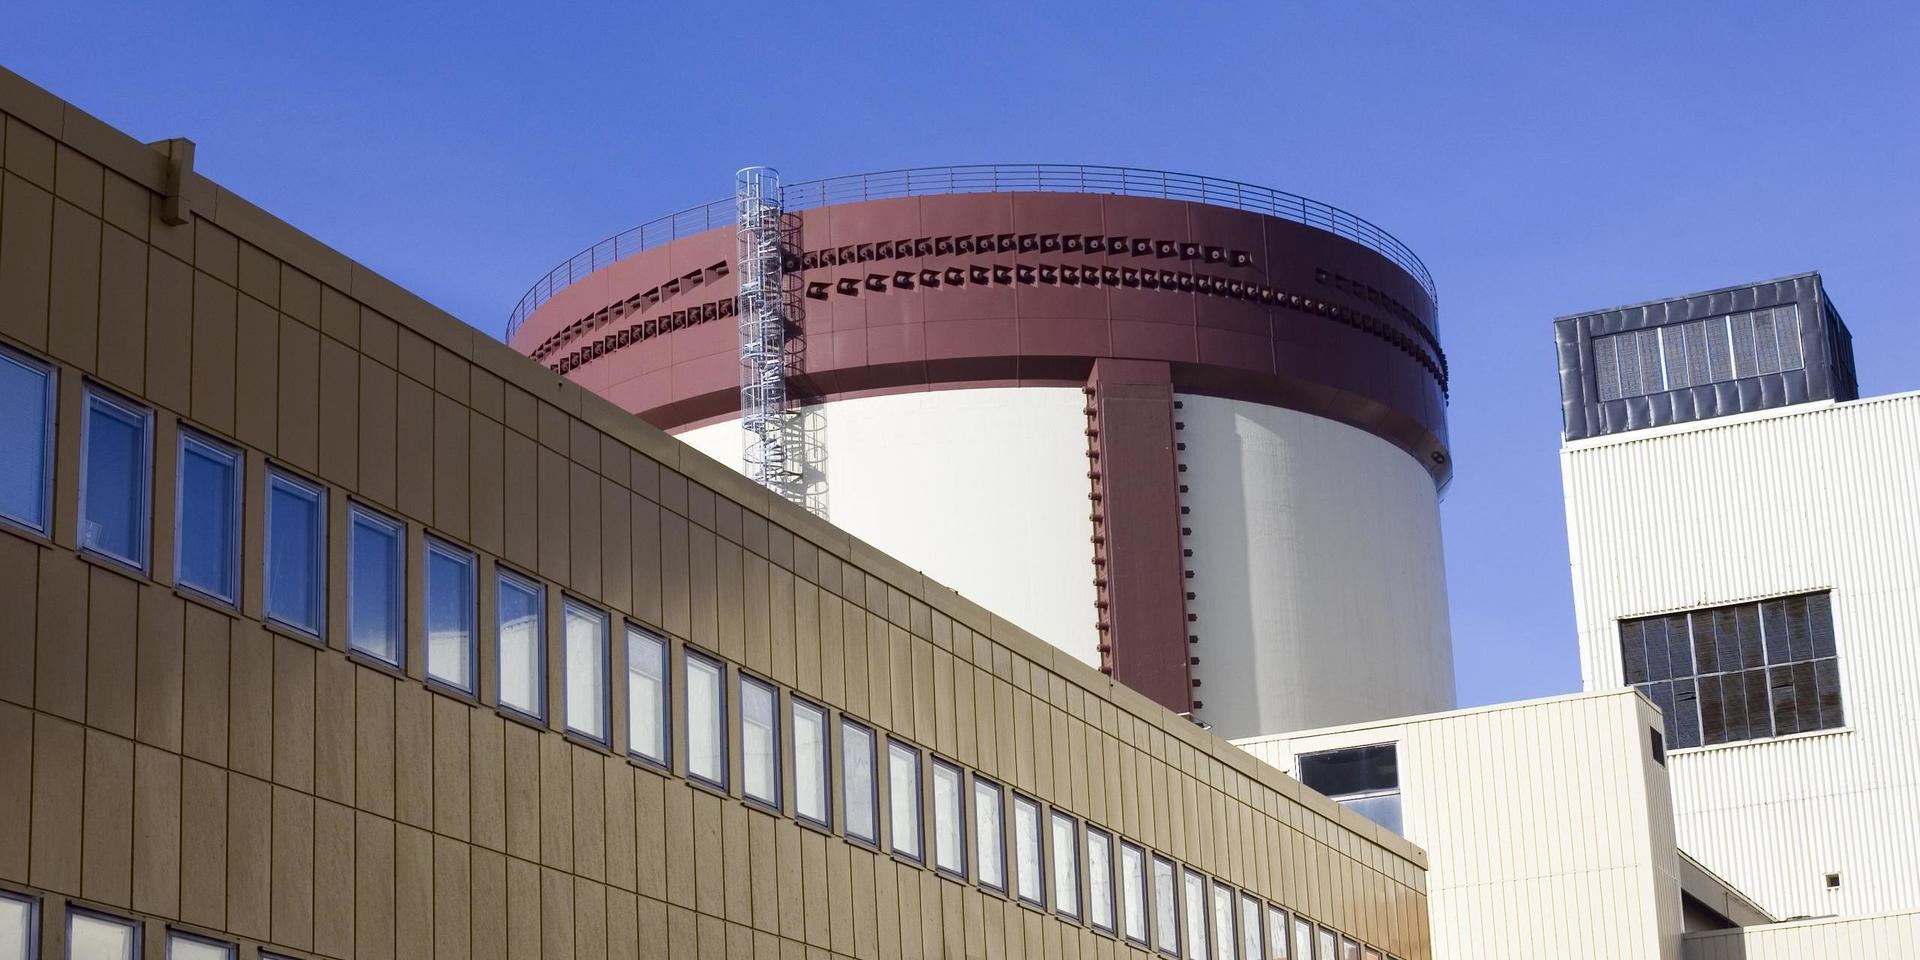 Ett forskningscentrum som fokuserar både på produktion, distribution och lagring av energi skulle med fördel kunna utgå ifrån Ringhals när reaktorerna där är stängda, skriver debattörerna.